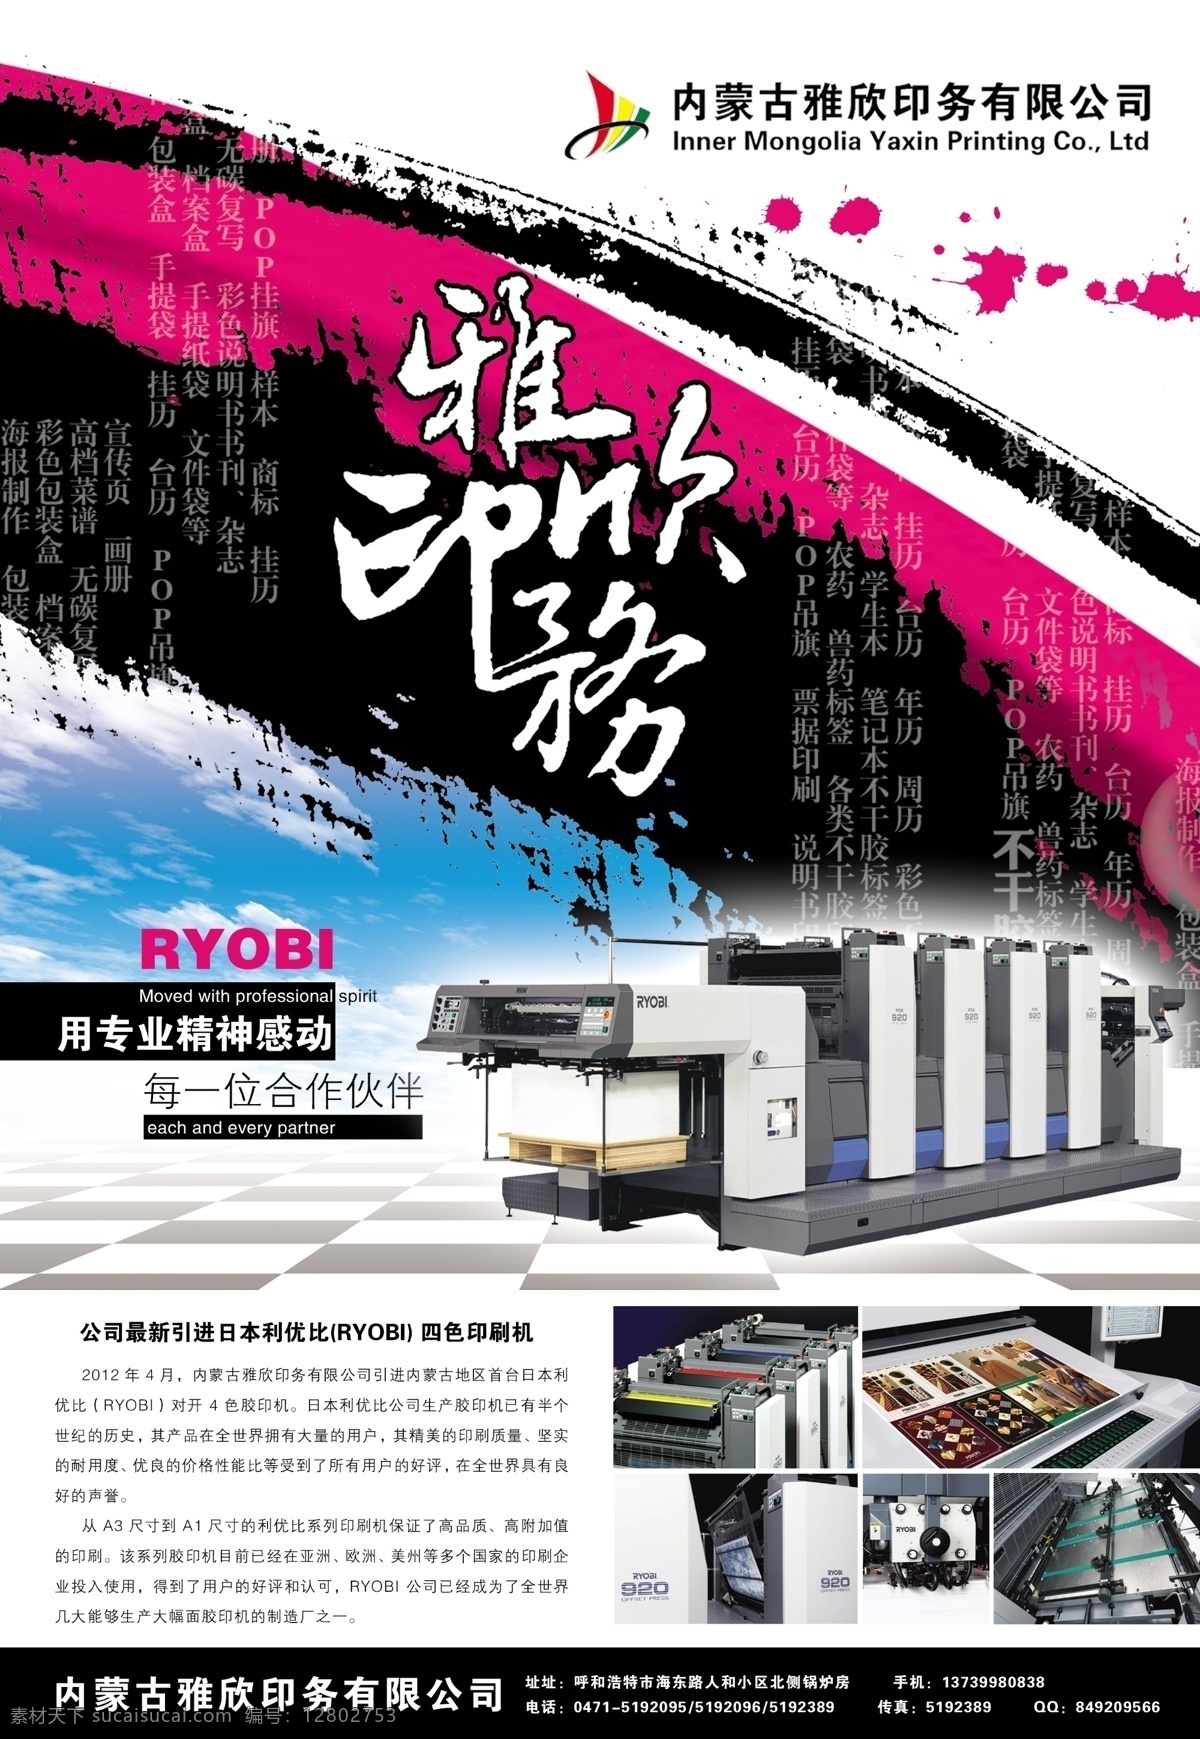 印刷厂海报 印刷 印刷厂 海报 广告 印刷机 广告设计模板 源文件